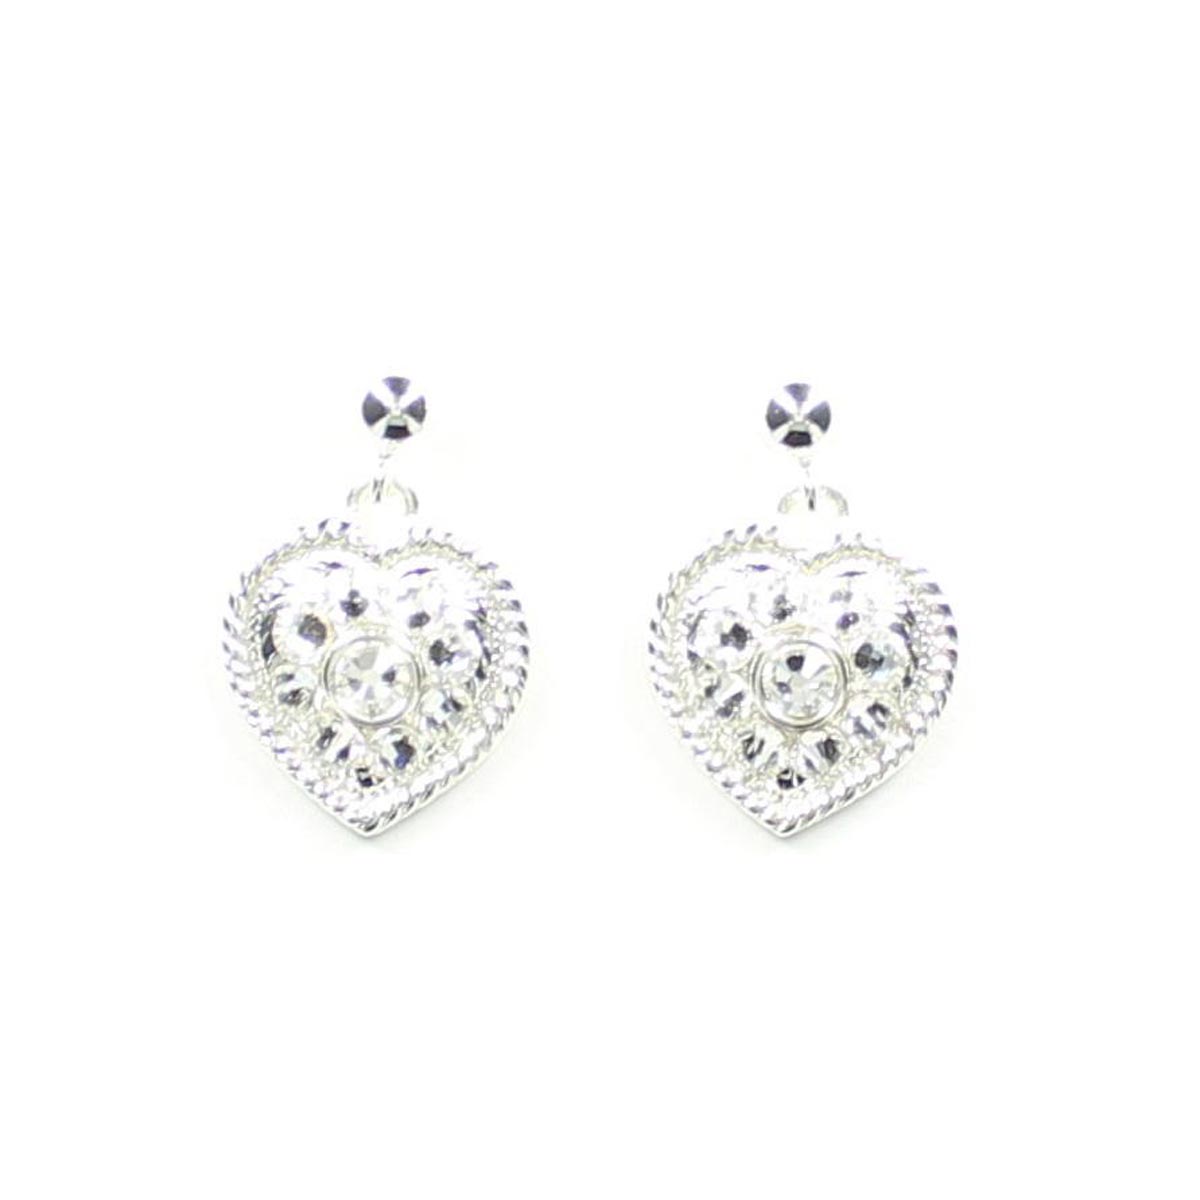 30170 Crystal Heart Drop Earrings, Silver